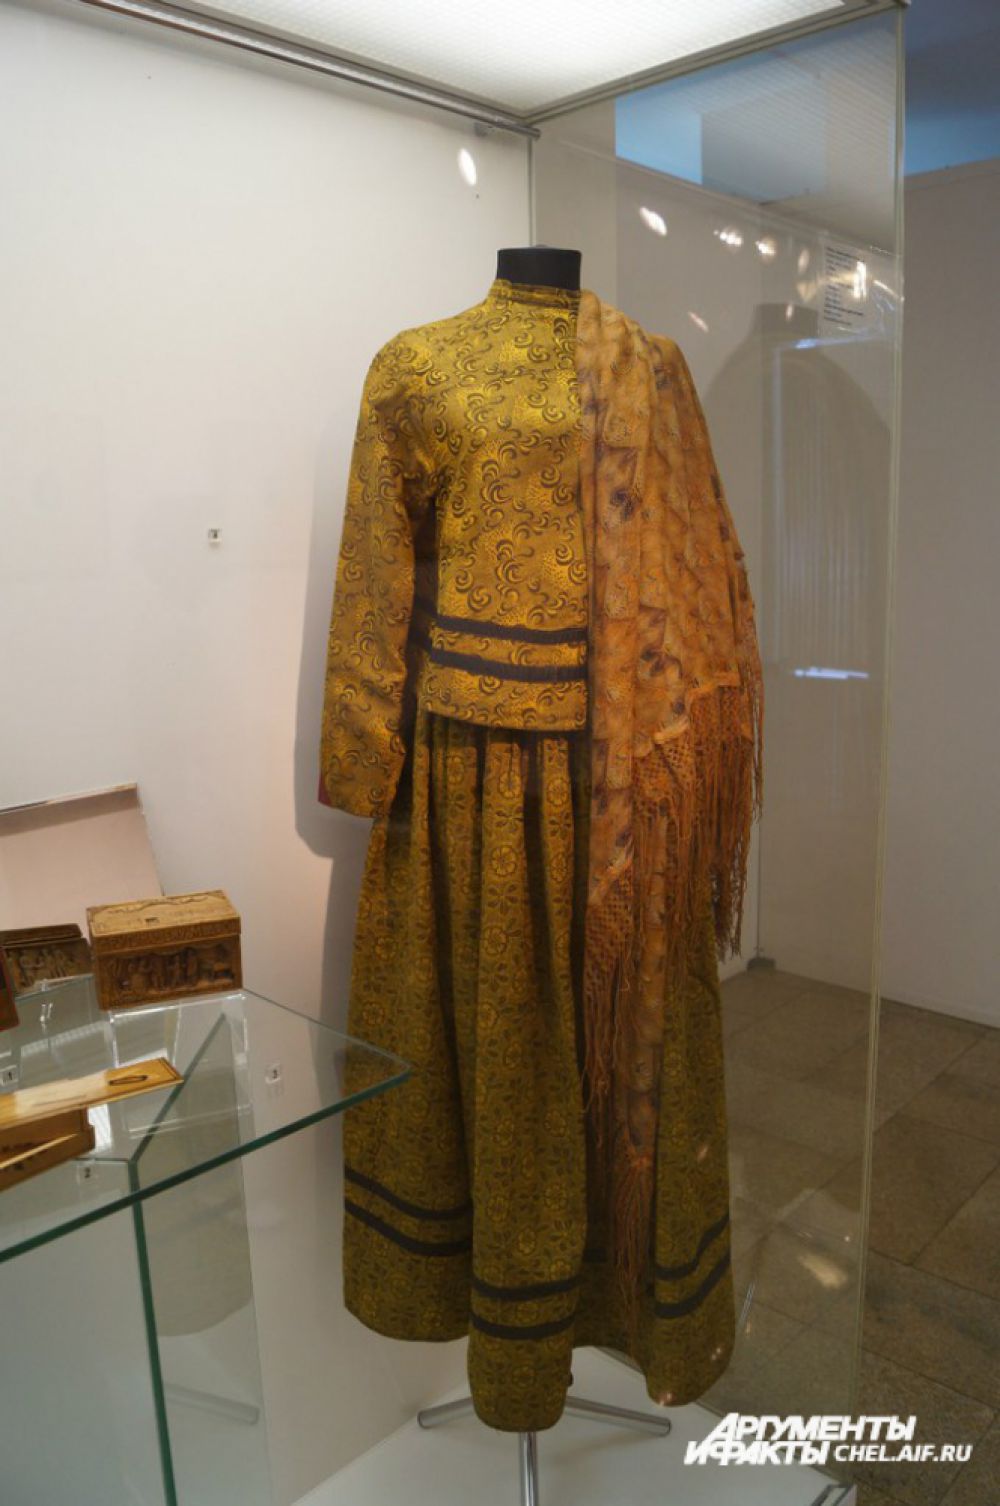 Женский костюм охристого цвета из хлопчатобумажной ткани. Подобные ему носили сибирячки начала XX века.